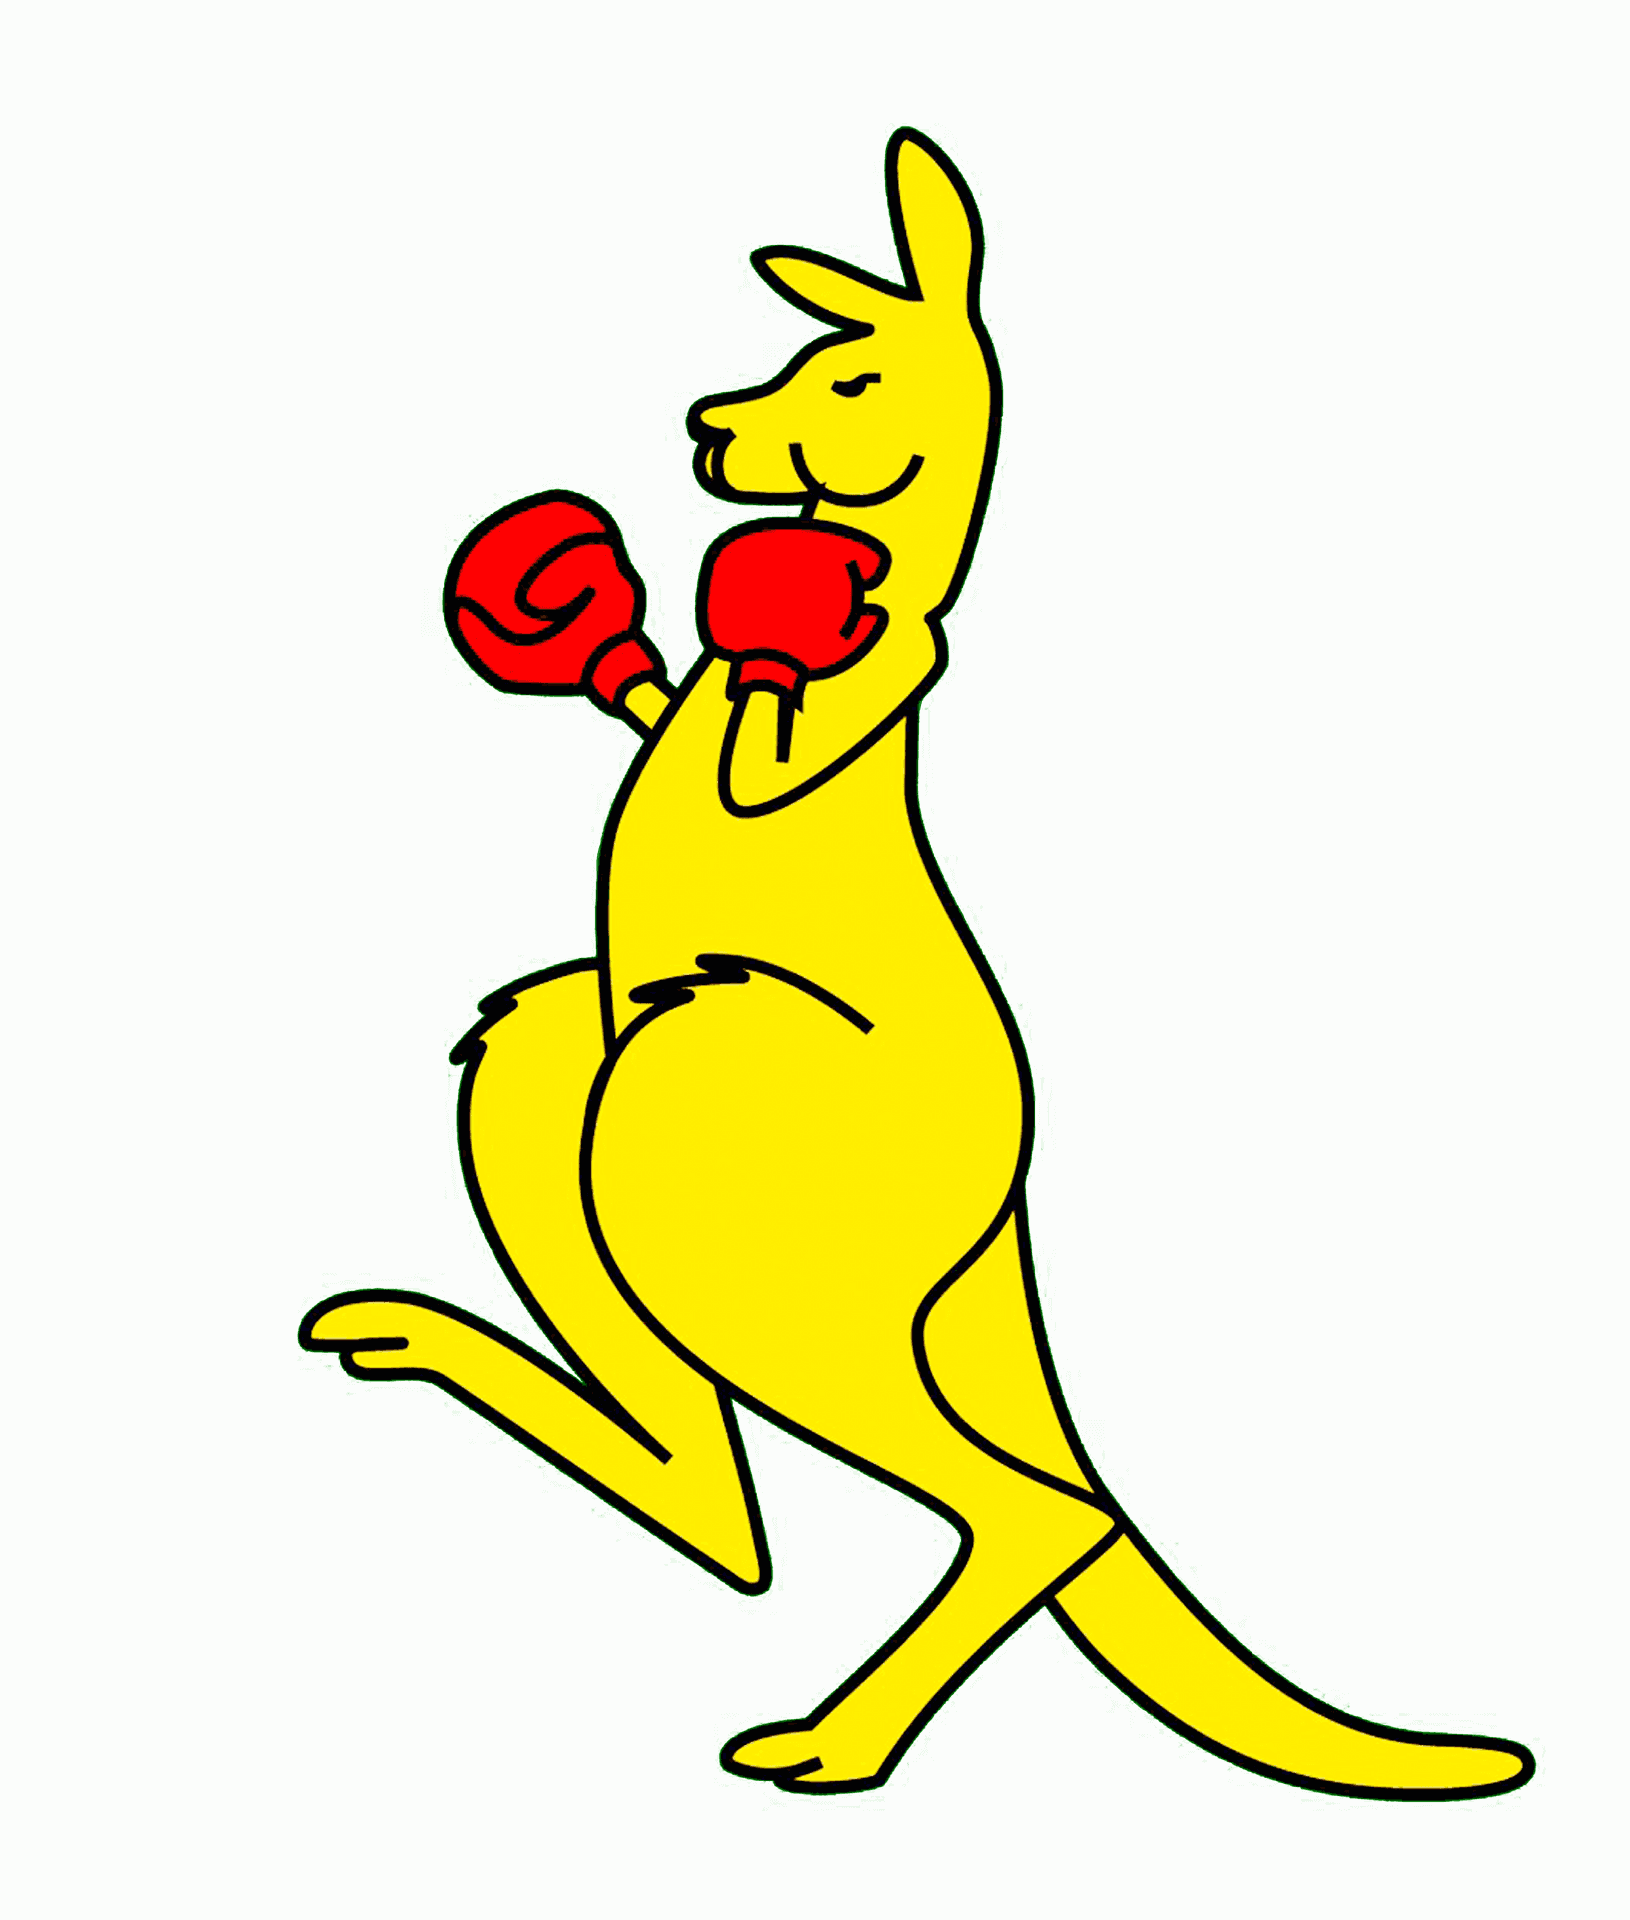 Boxing Kangaroo Cartoon Illustration PNG image